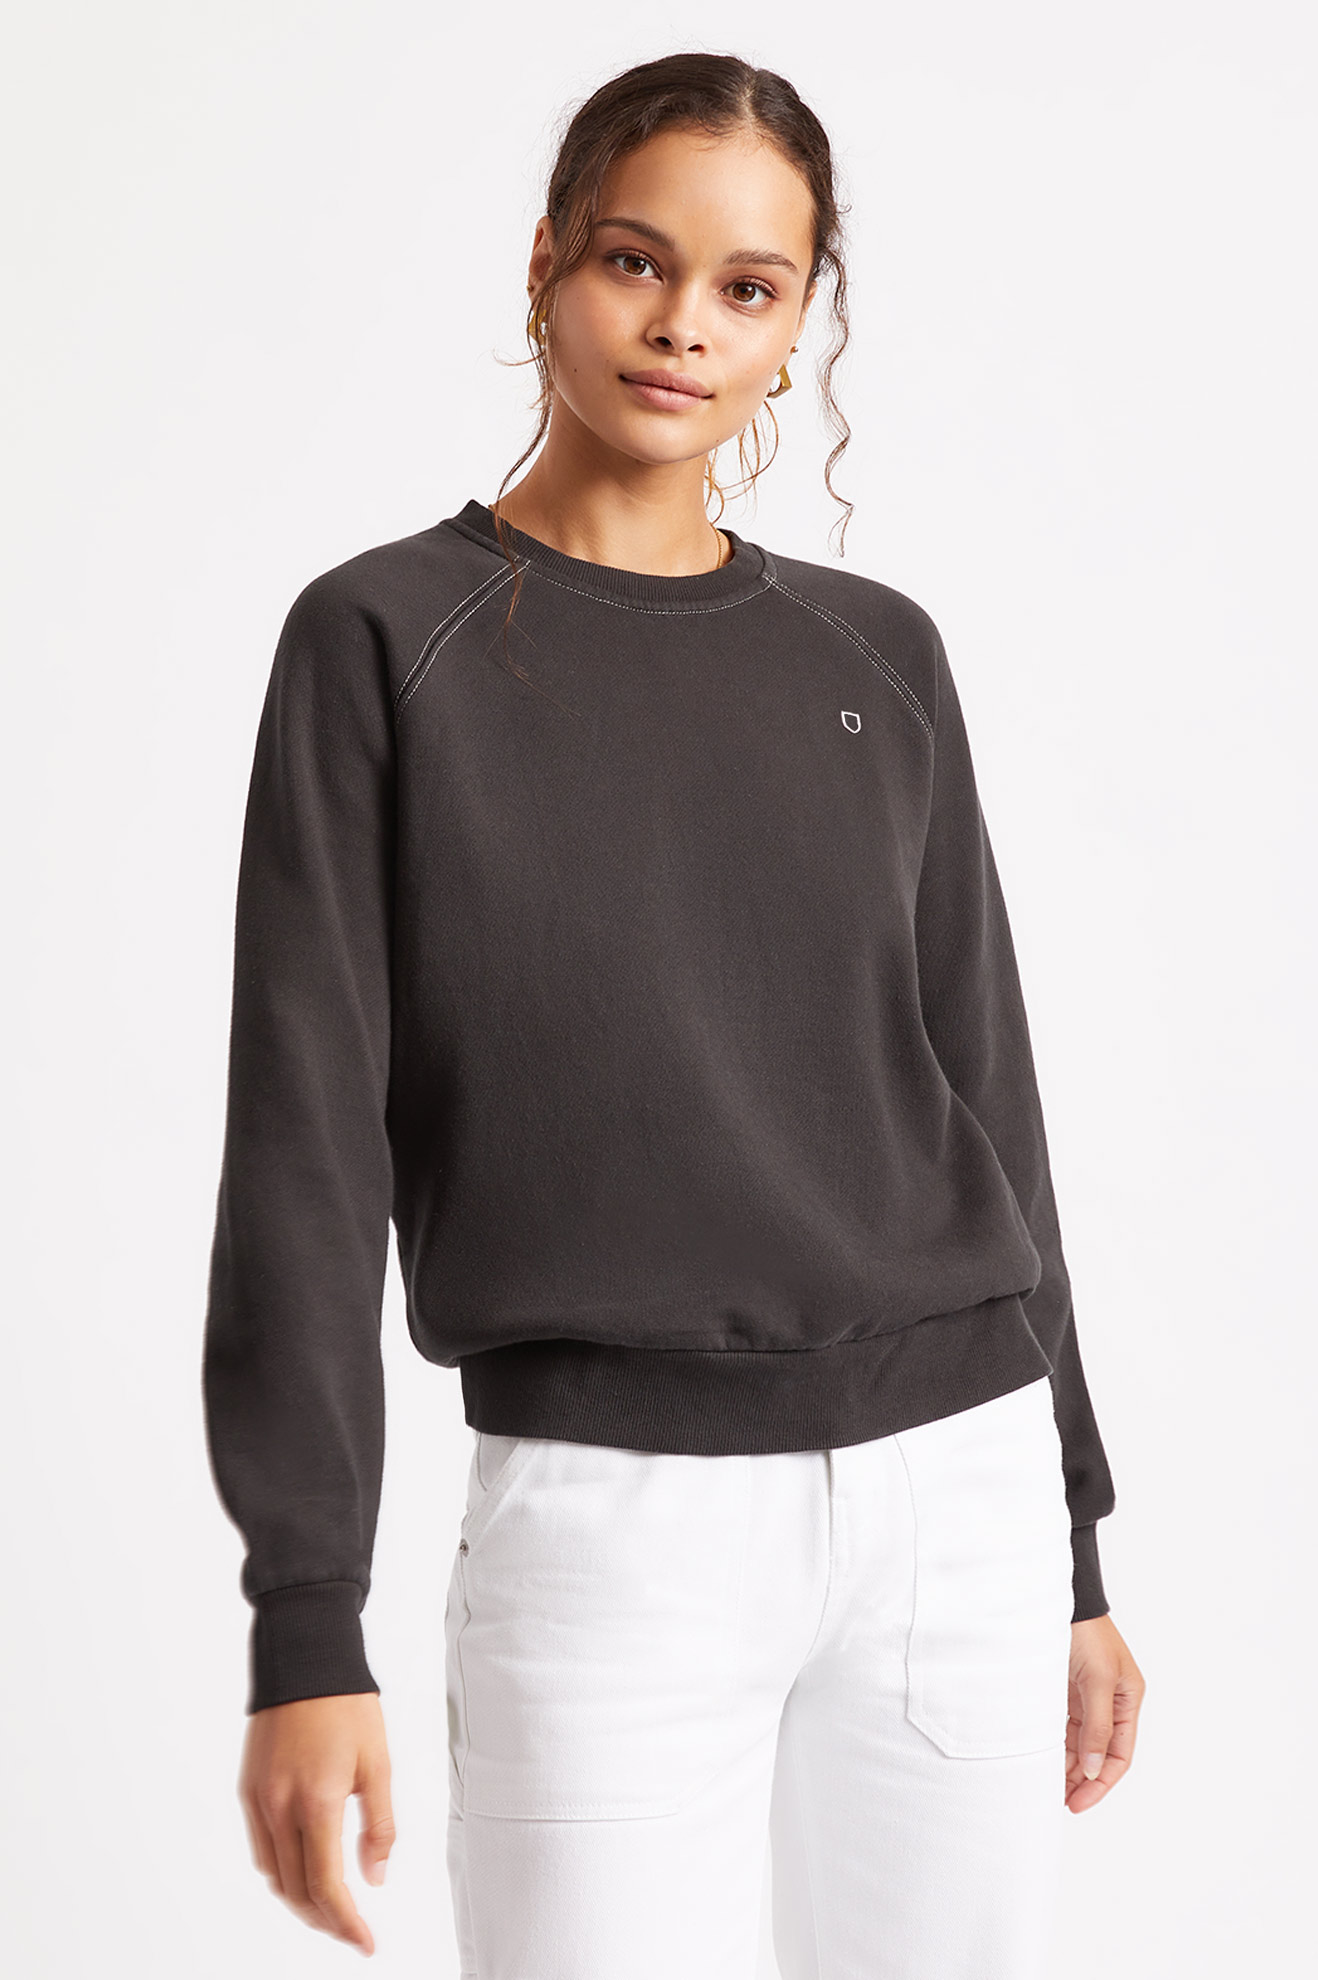 Women's Sweaters, Fleece & Sweatshirts